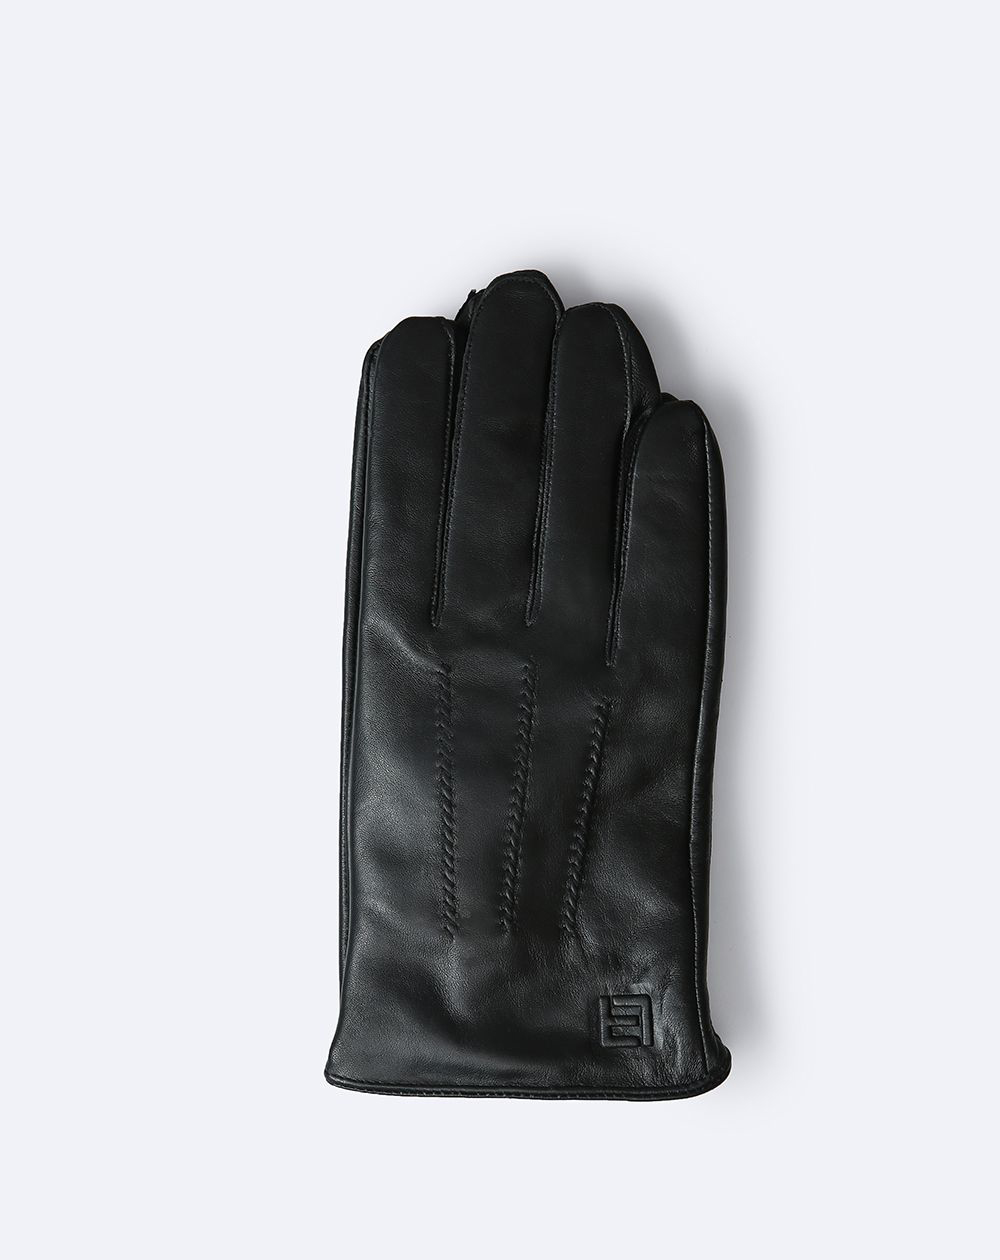 Găng tay cao cấp mã GTLACUNA-17-D